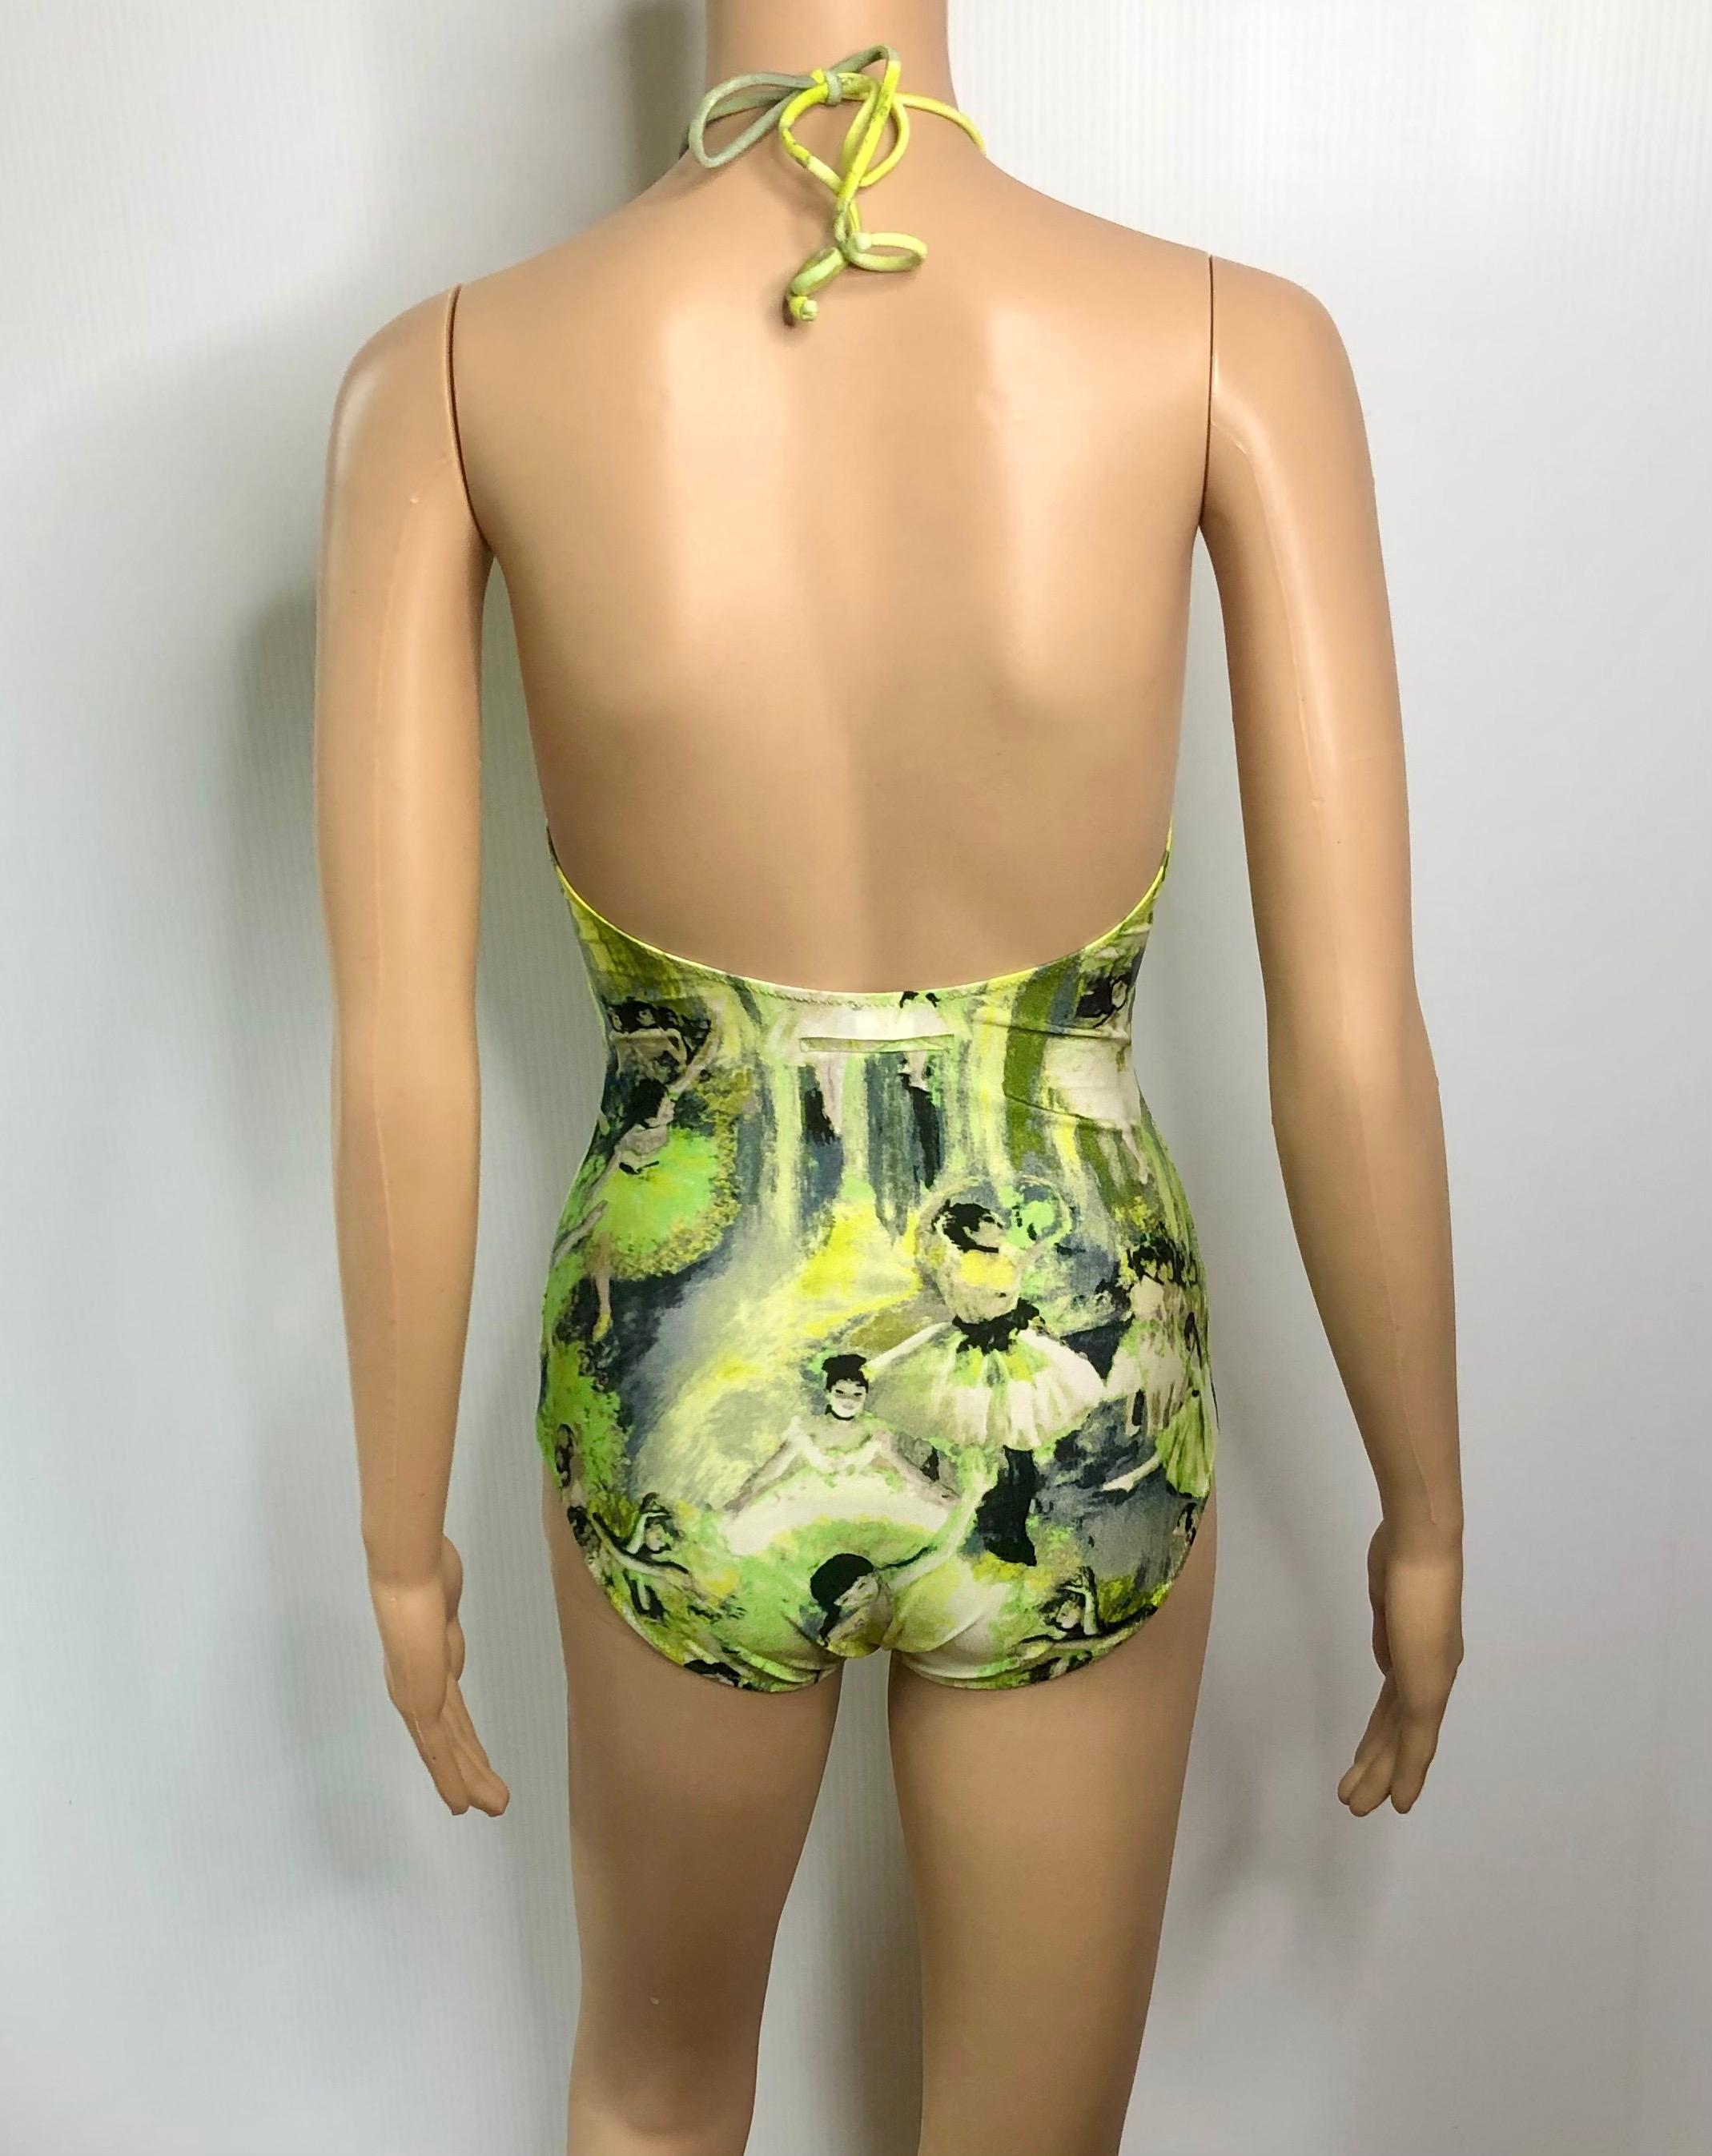 Jean Paul Gaultier Soleil S/S 2004 Degas Ballet Bodysuit Swimwear Swimsuit For Sale 1